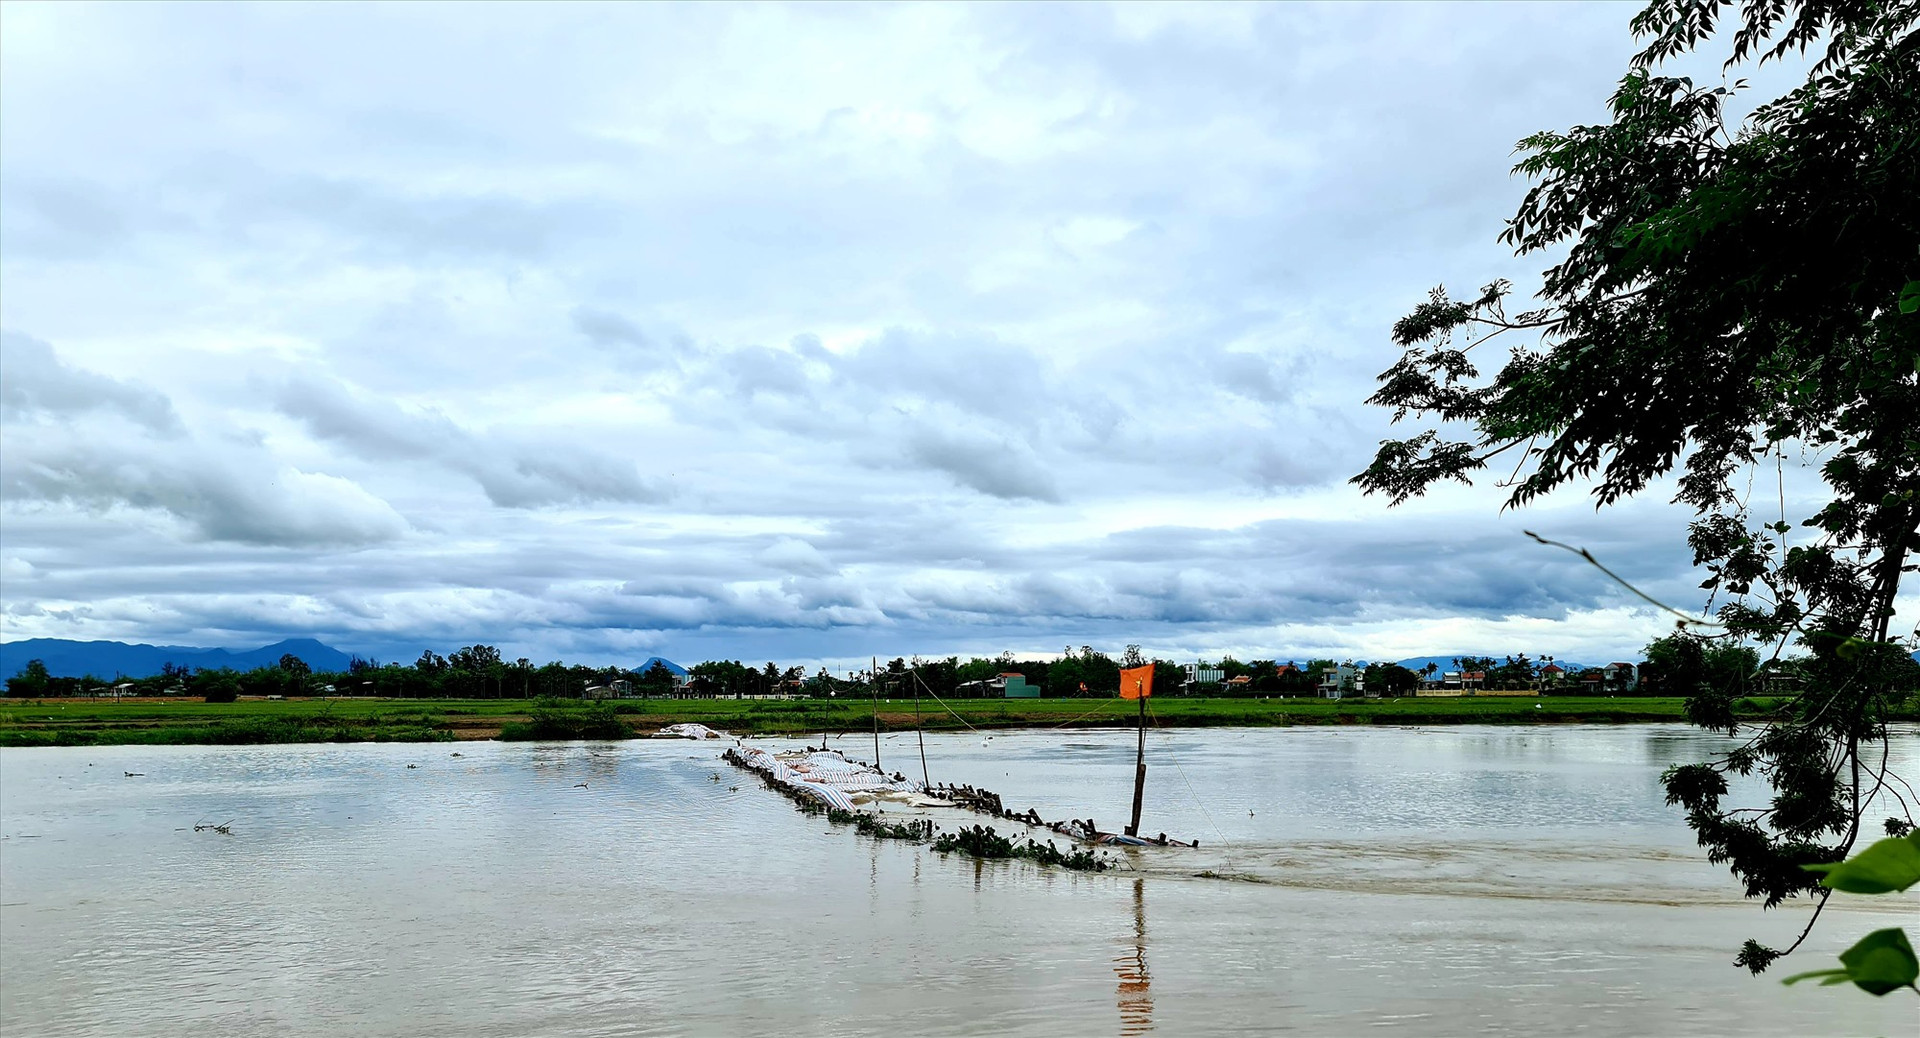 Tuyến đập bổi ngăn mặn - giữ ngọt trên sông Vĩnh Điện (Điện Bàn) bị vỡ vào đêm ngày 1.4, ước tính thiệt hại khoảng 1,5 tỷ đồng. Ảnh: P.V